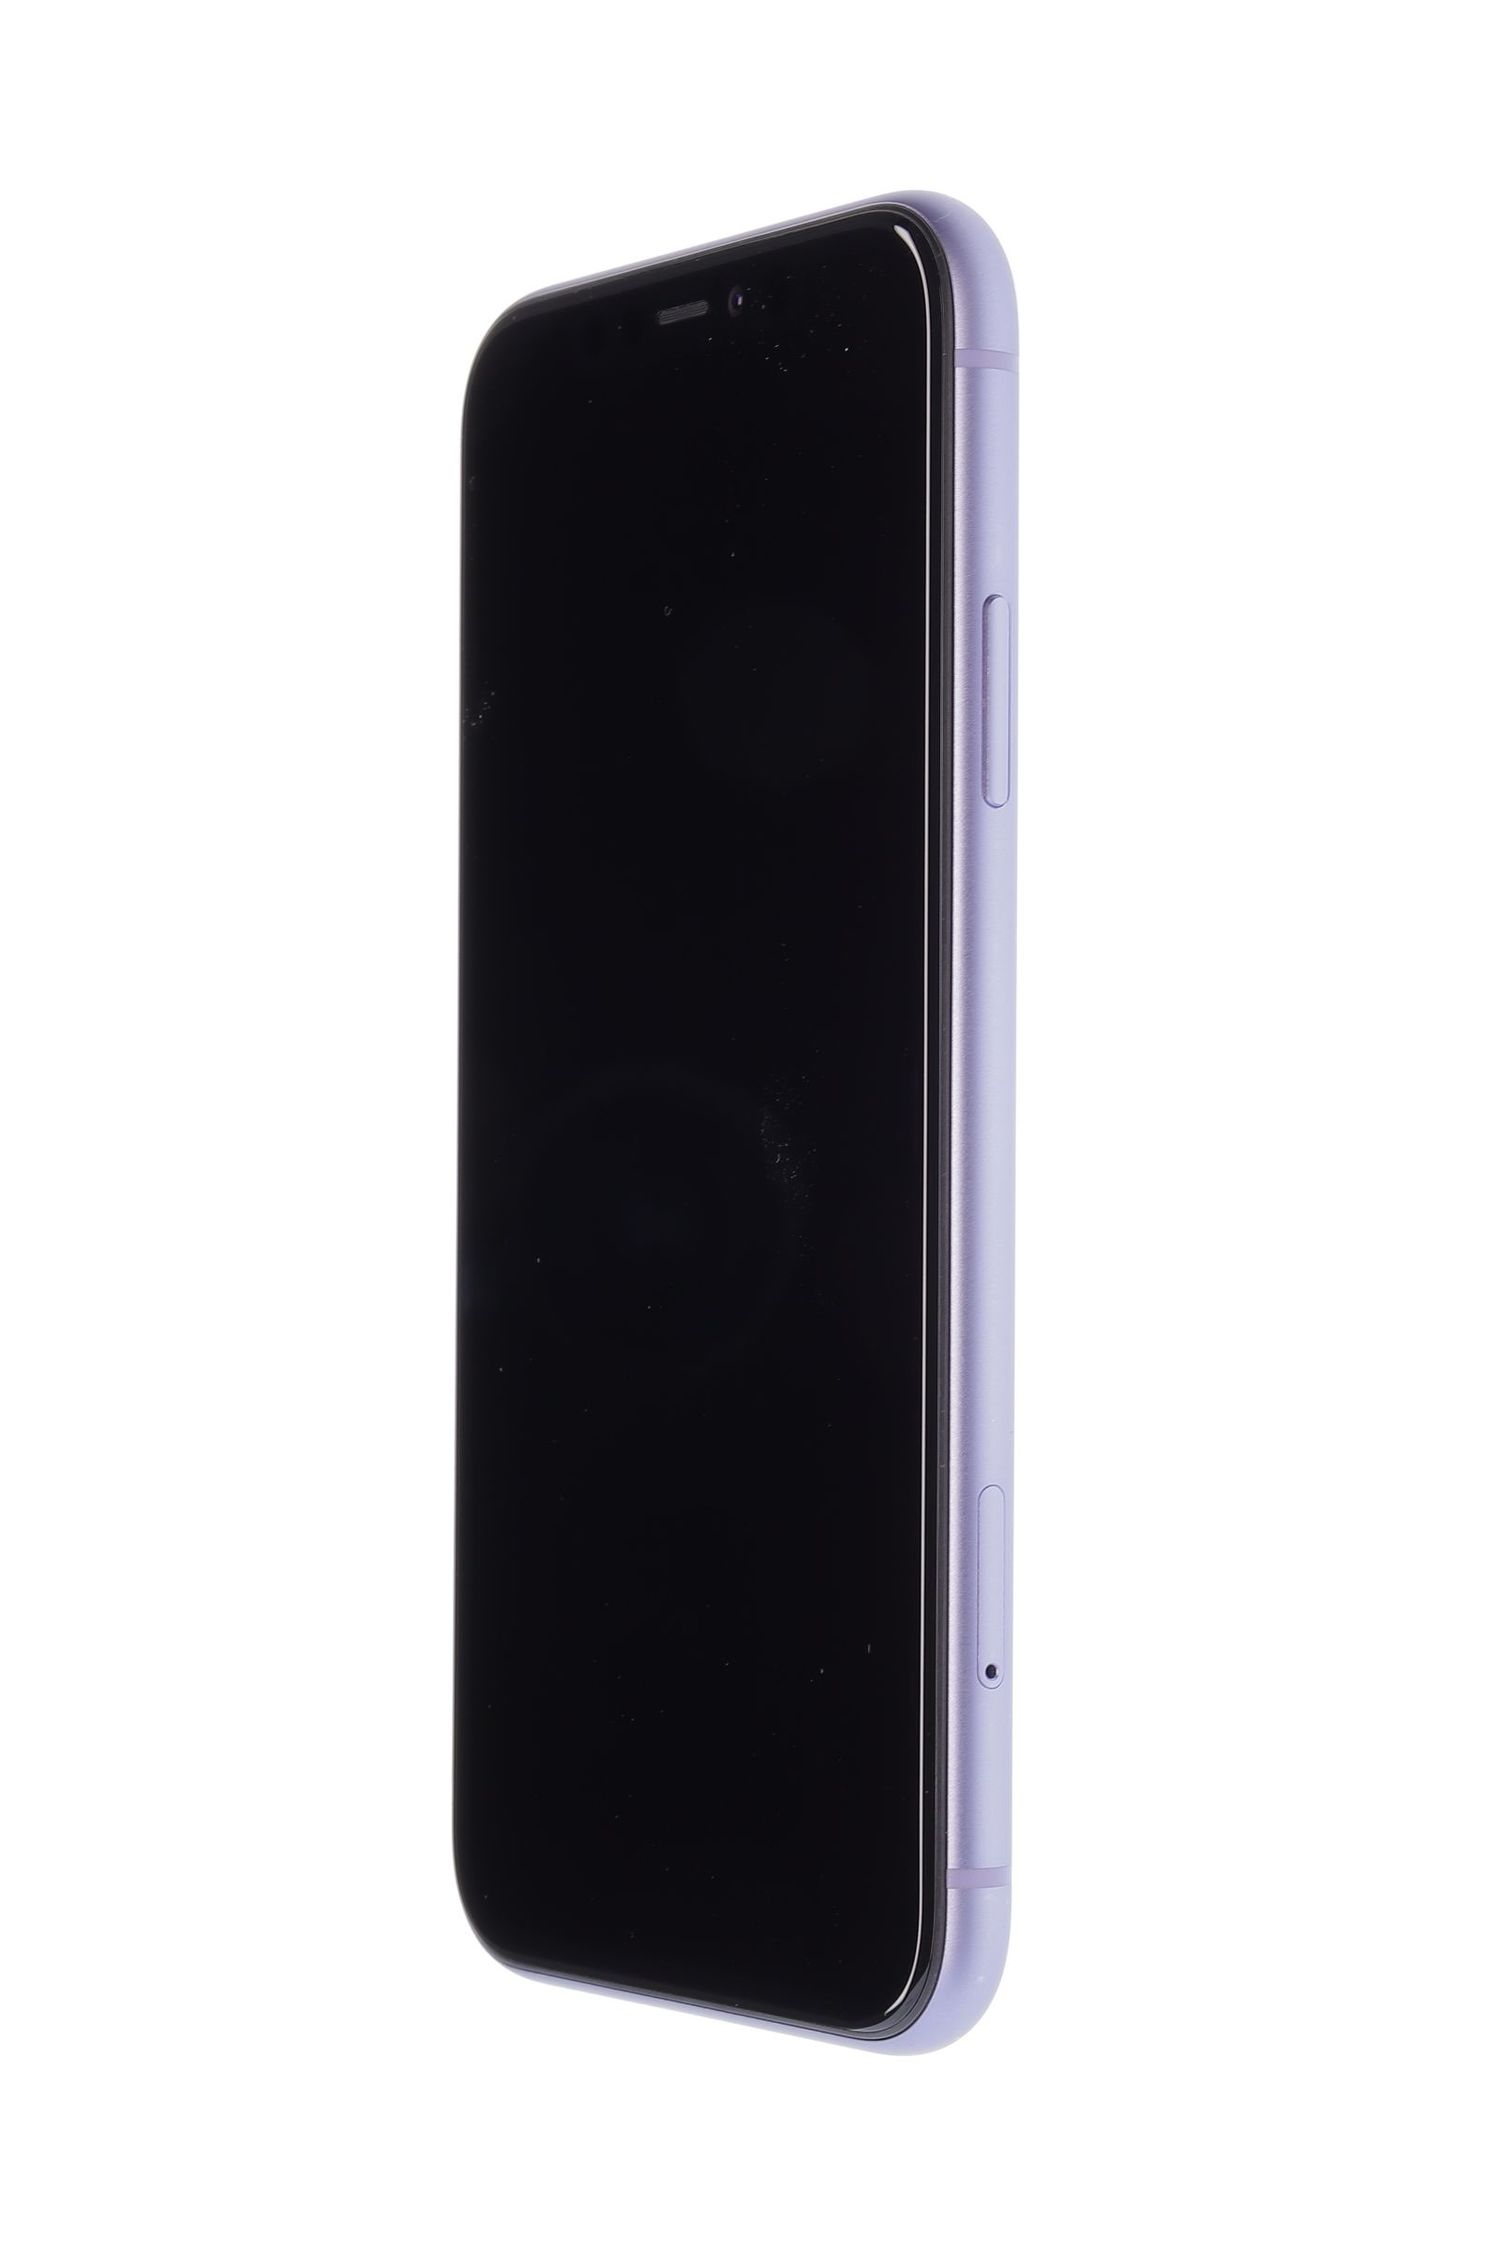 Κινητό τηλέφωνο Apple iPhone 11, Purple, 64 GB, Foarte Bun